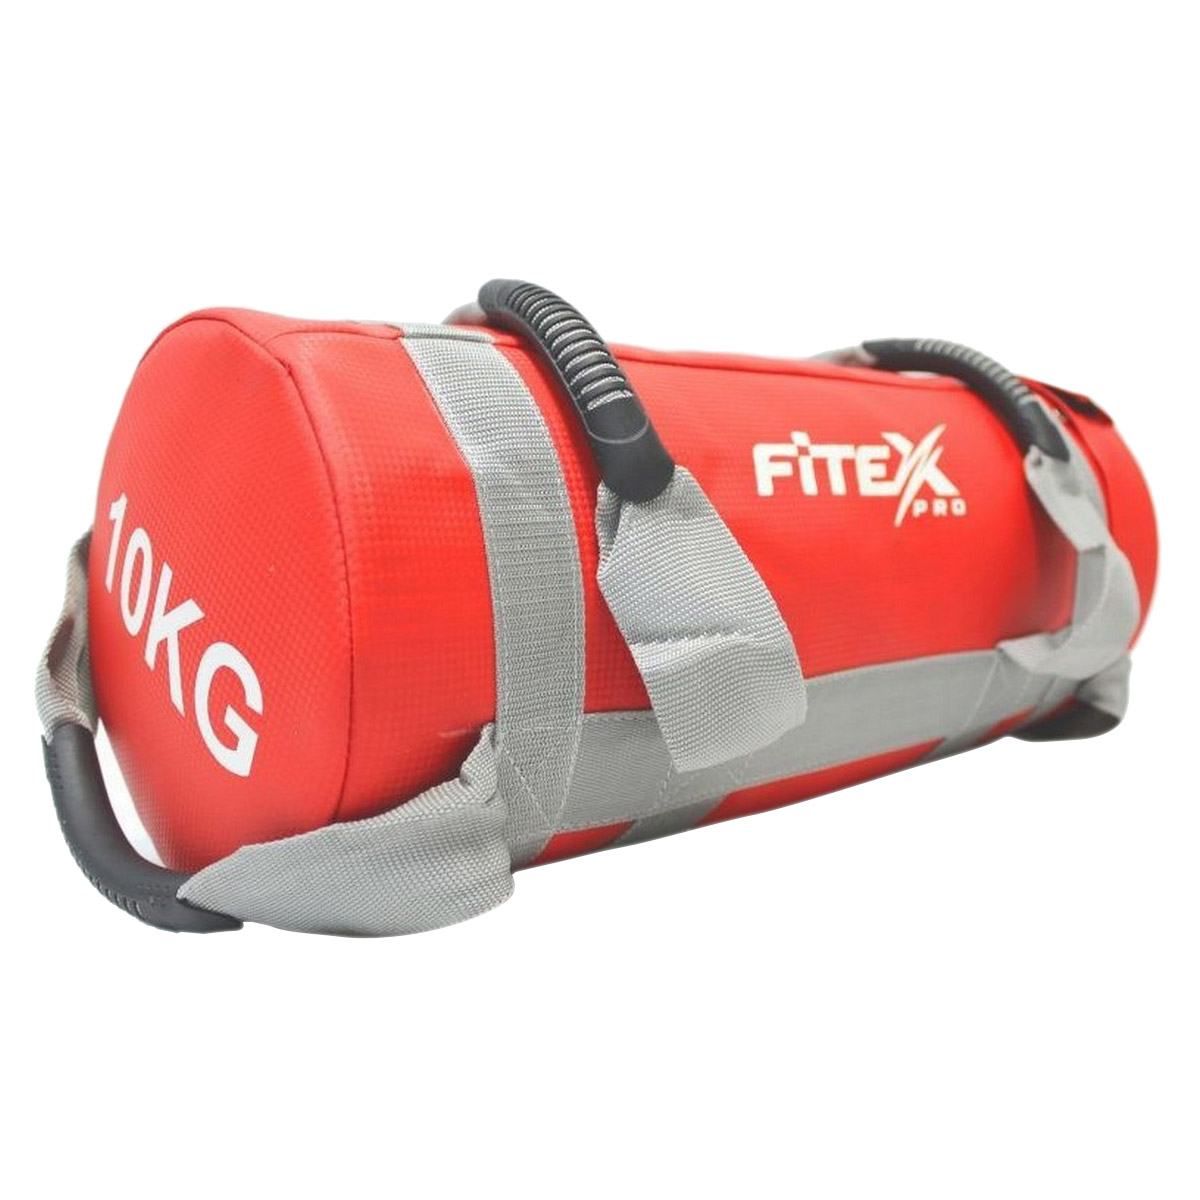  Fitex 10  MD1650-10